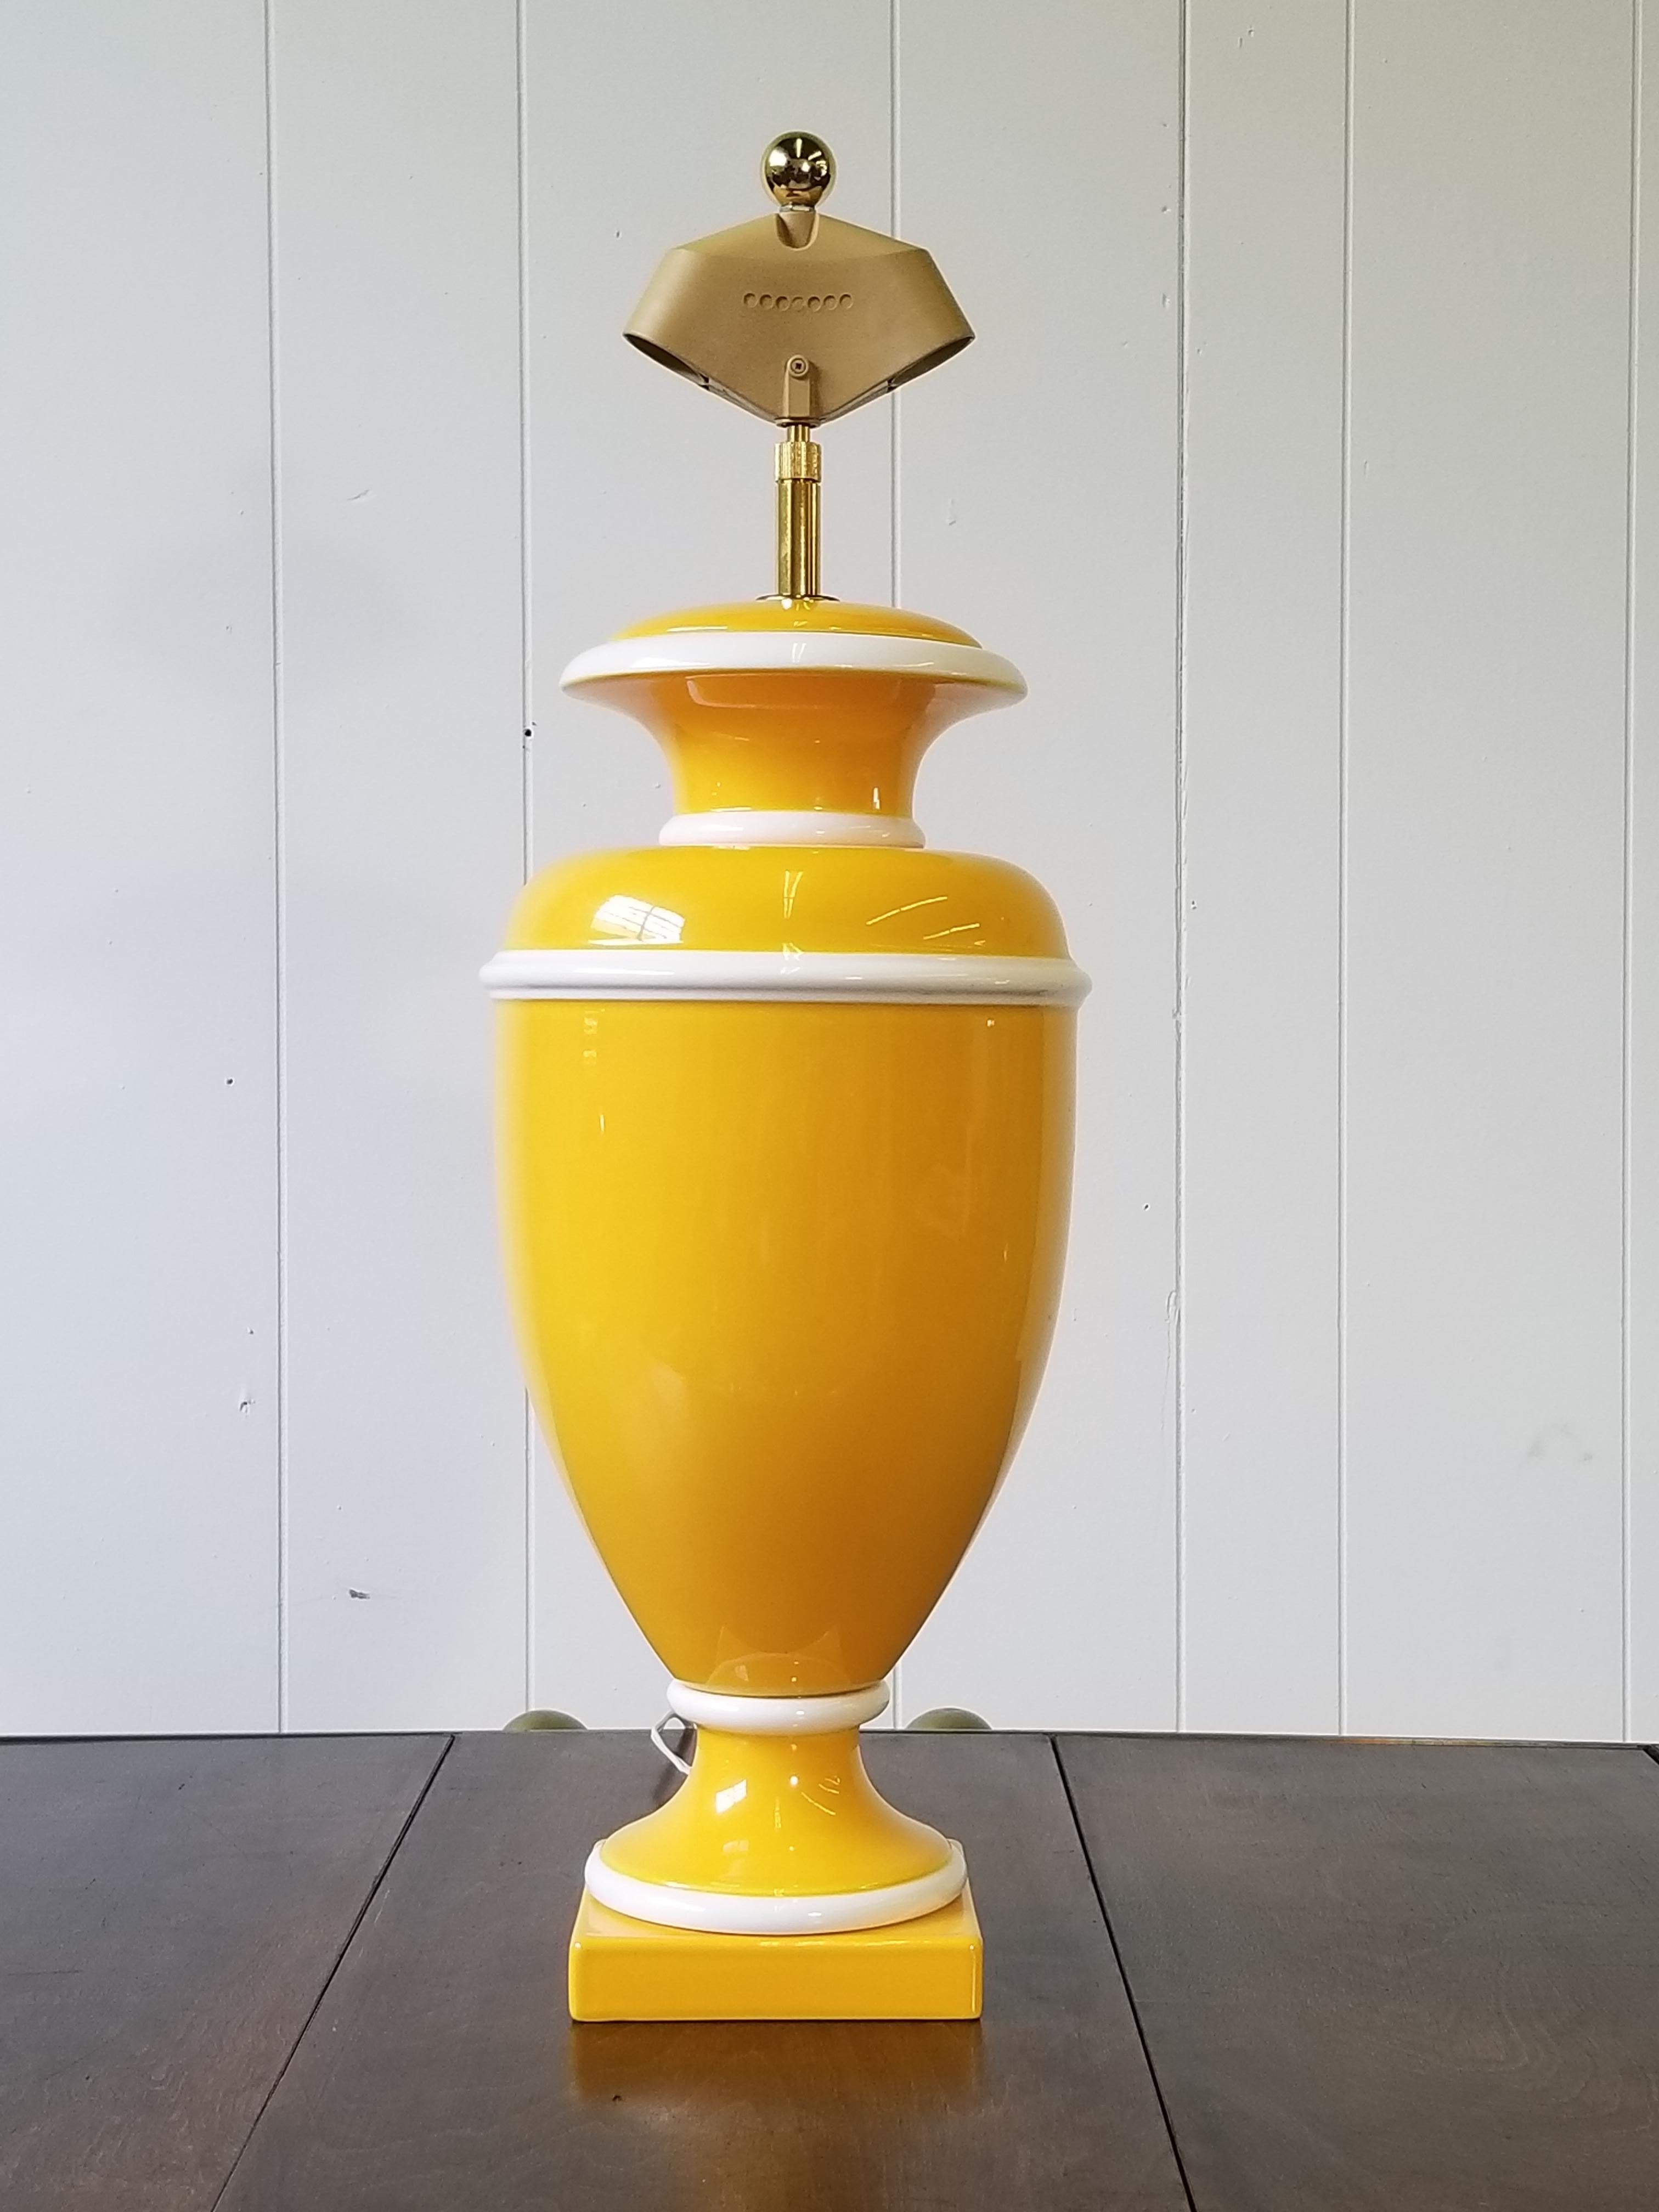 Dramatique lampe-urne italienne Hollywood Regency en céramique, jaune vif et garnie de blanc. Il y a une harpe intégrée et ajustable plaquée en or ; elle s'étend complètement jusqu'à 38